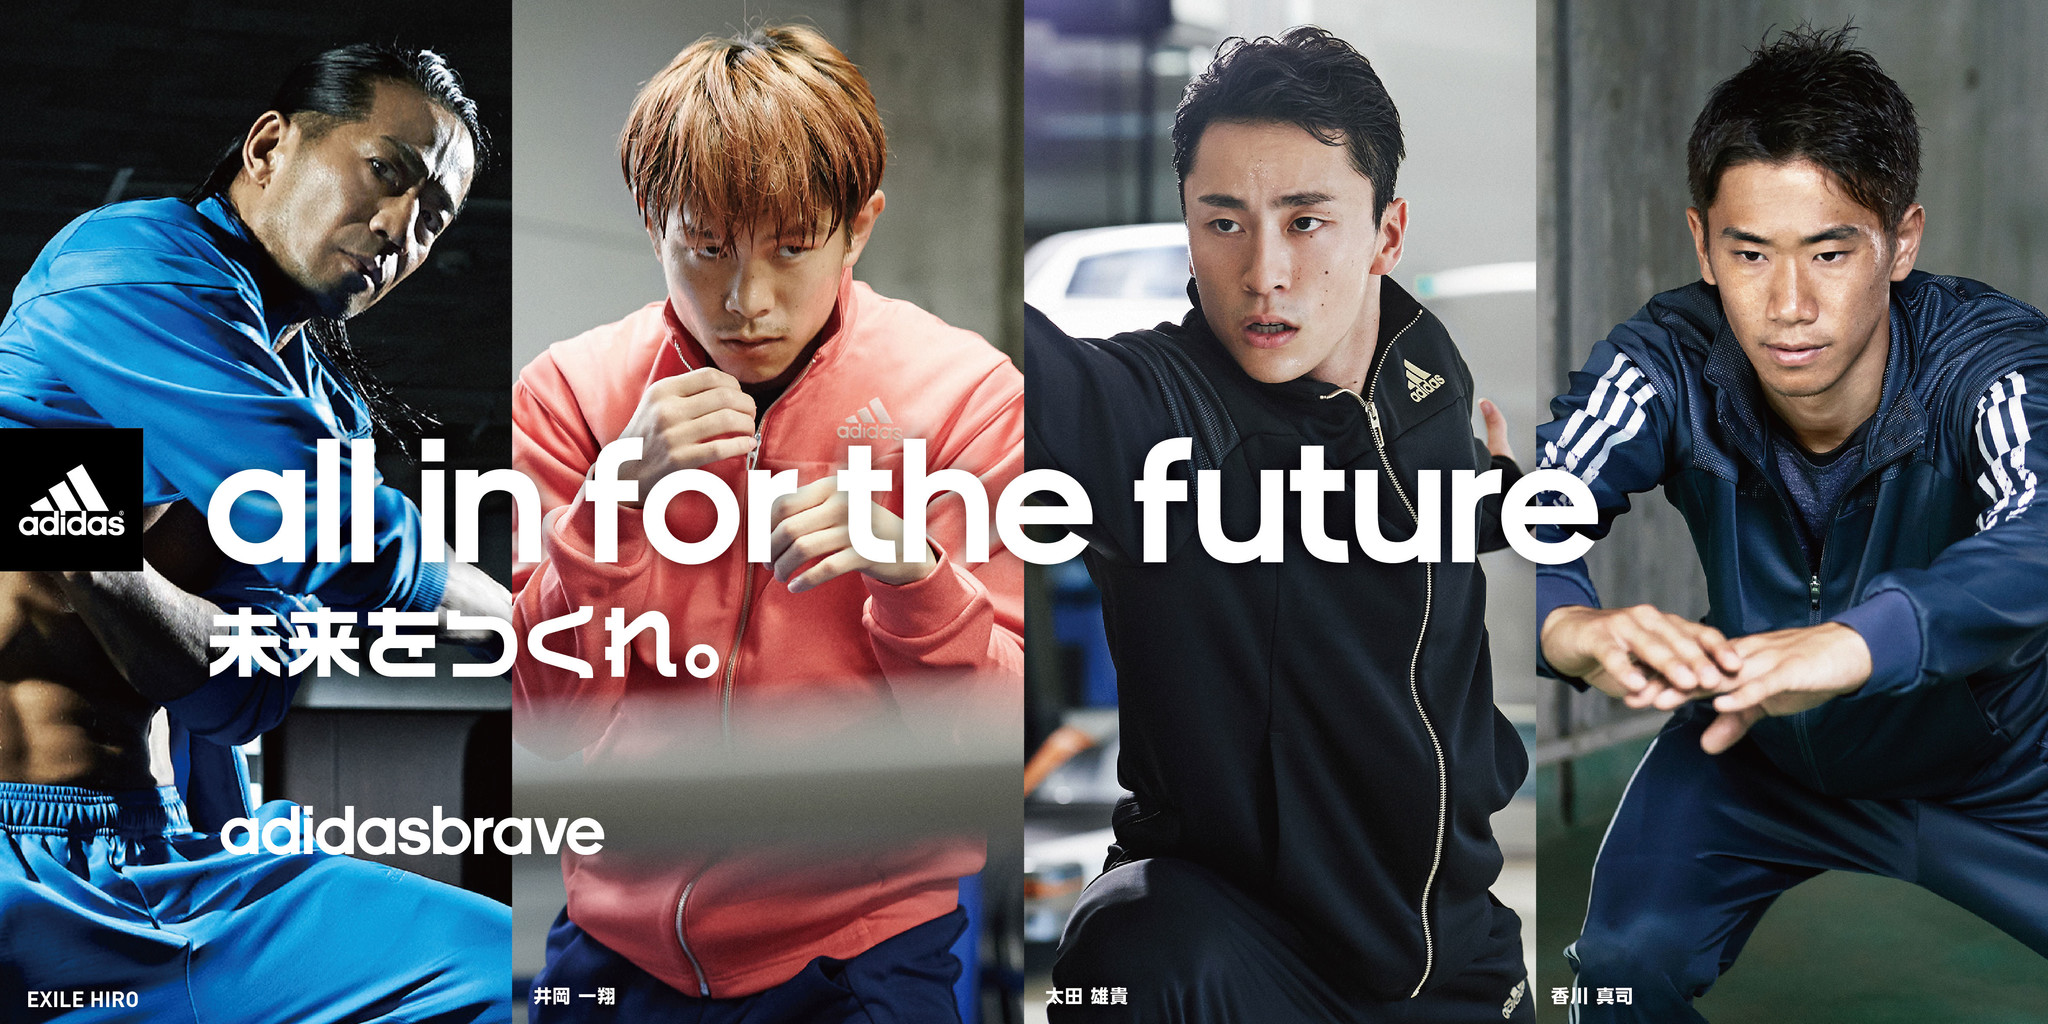 新トレーニングウェア『adidasbrave』発売を記念してEXILE HIRO、井岡一翔、太田雄貴、香川真司らがスペシャルトレーニング